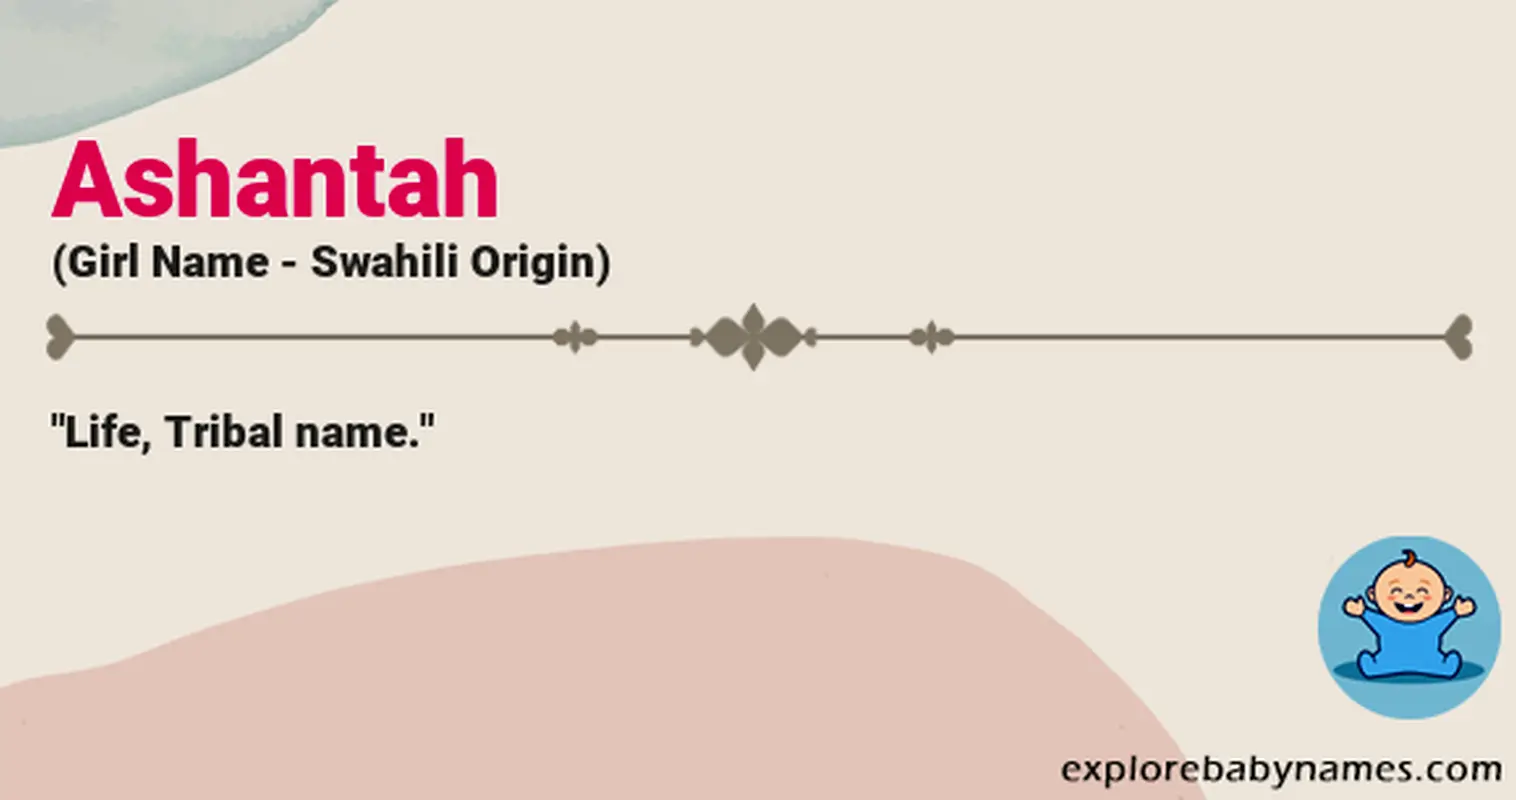 Meaning of Ashantah